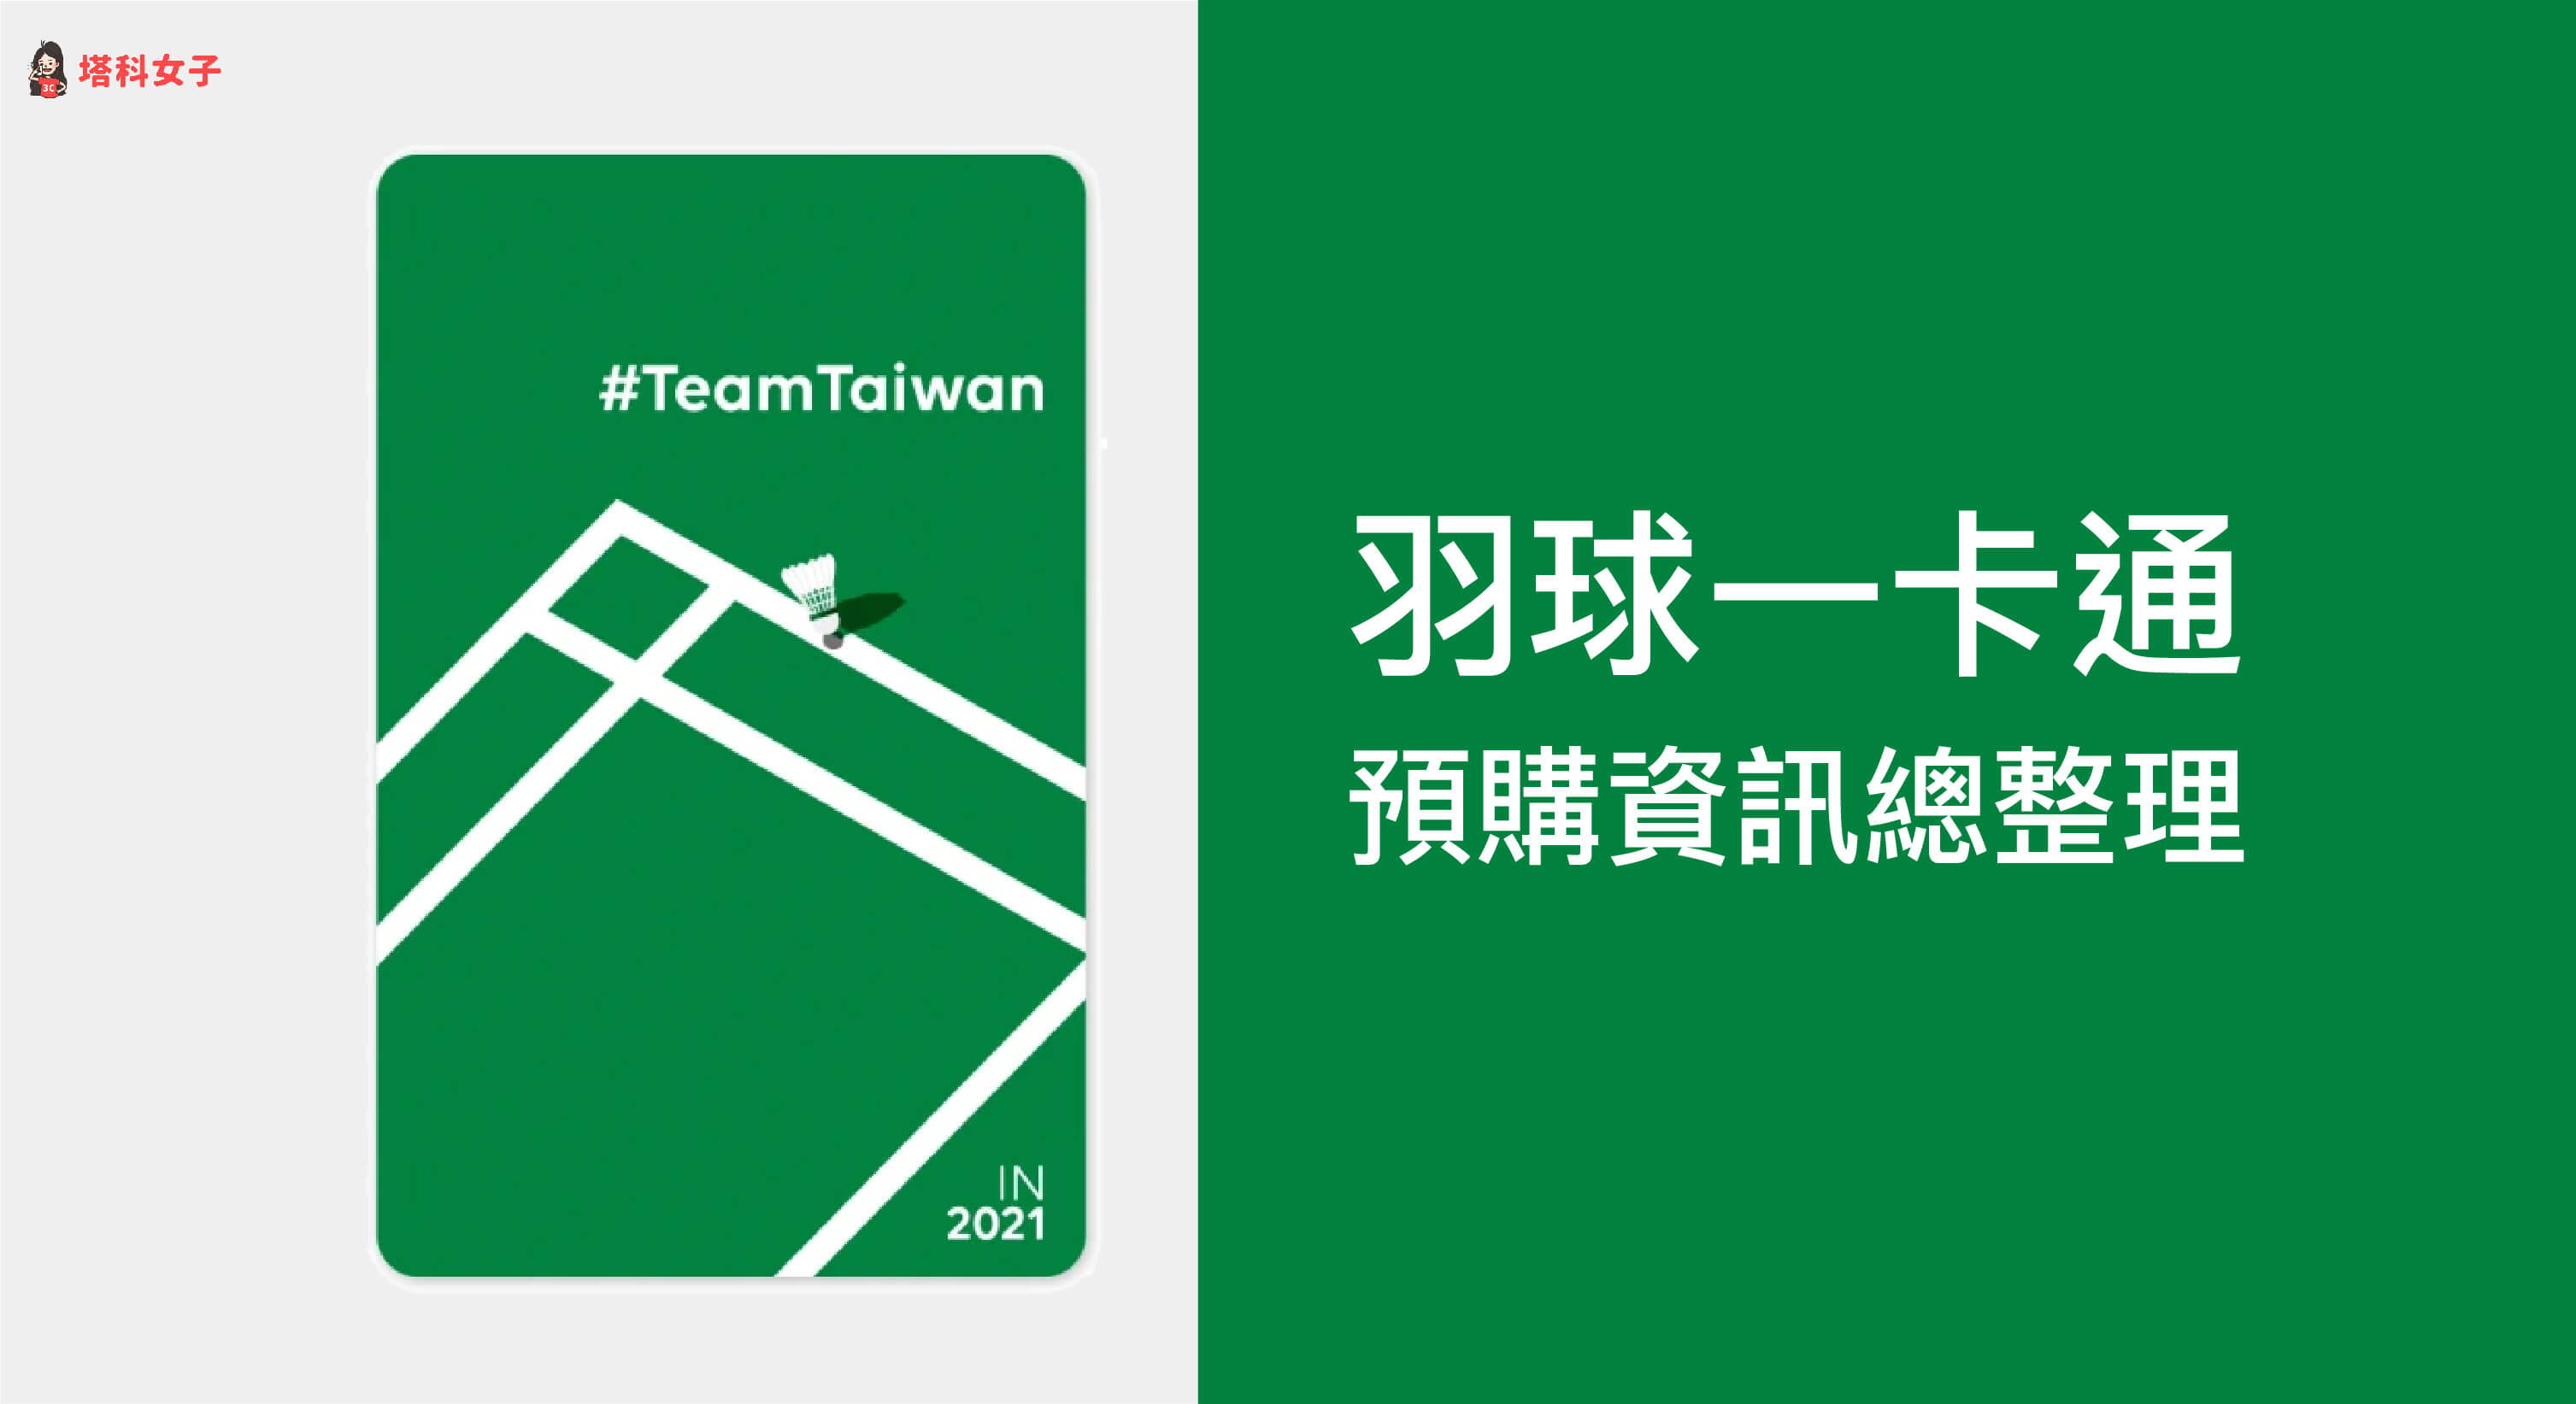 一卡通公司也有推出「#TeamTaiwan IN 2021 一卡通」